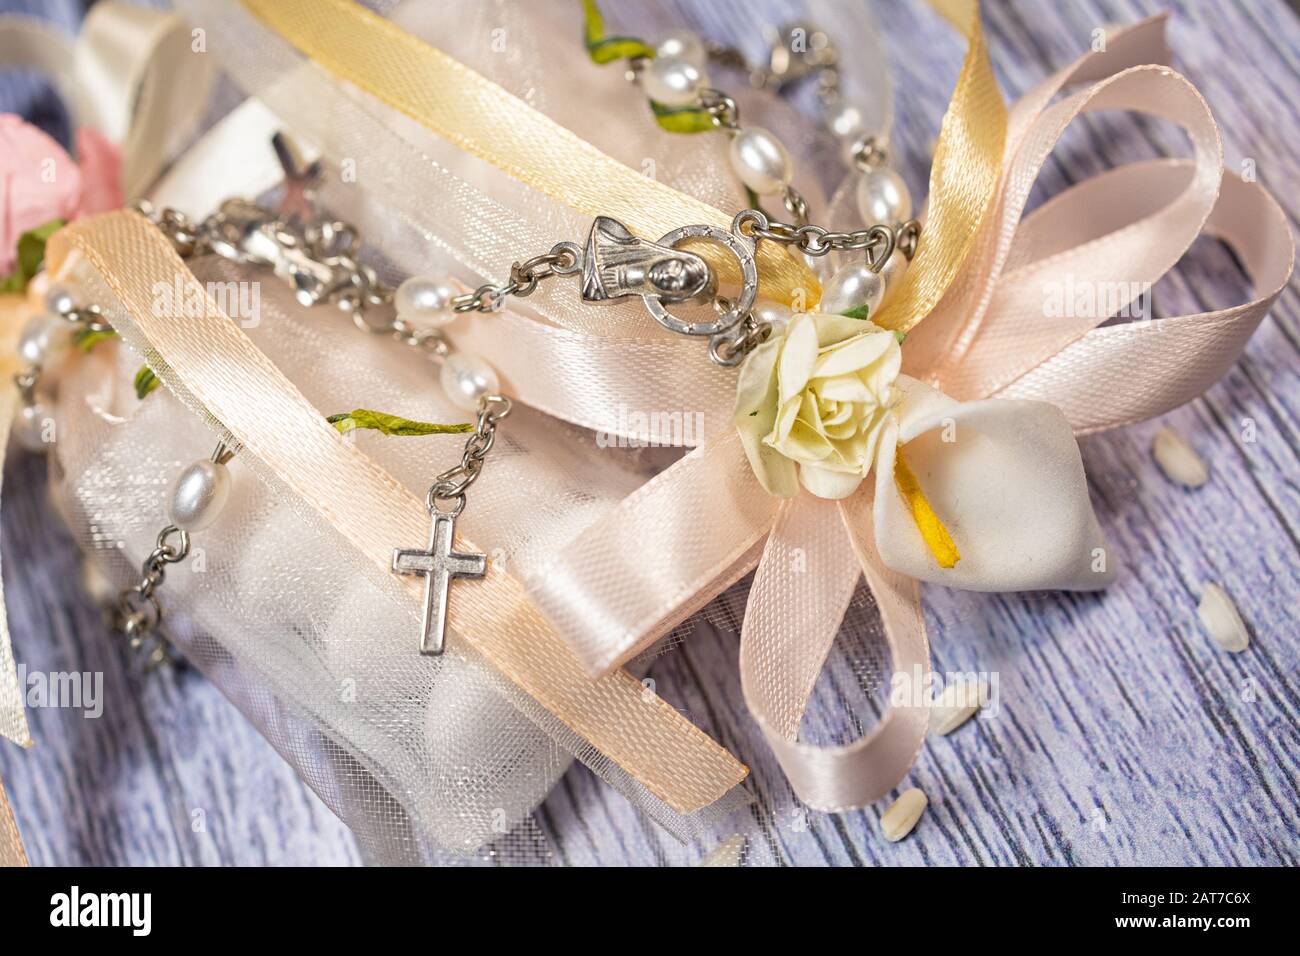 Favori di nozze. Scatole con nastro rosa e oro contenente confetti e piccolo regalo cristiano rosario. Foto Stock